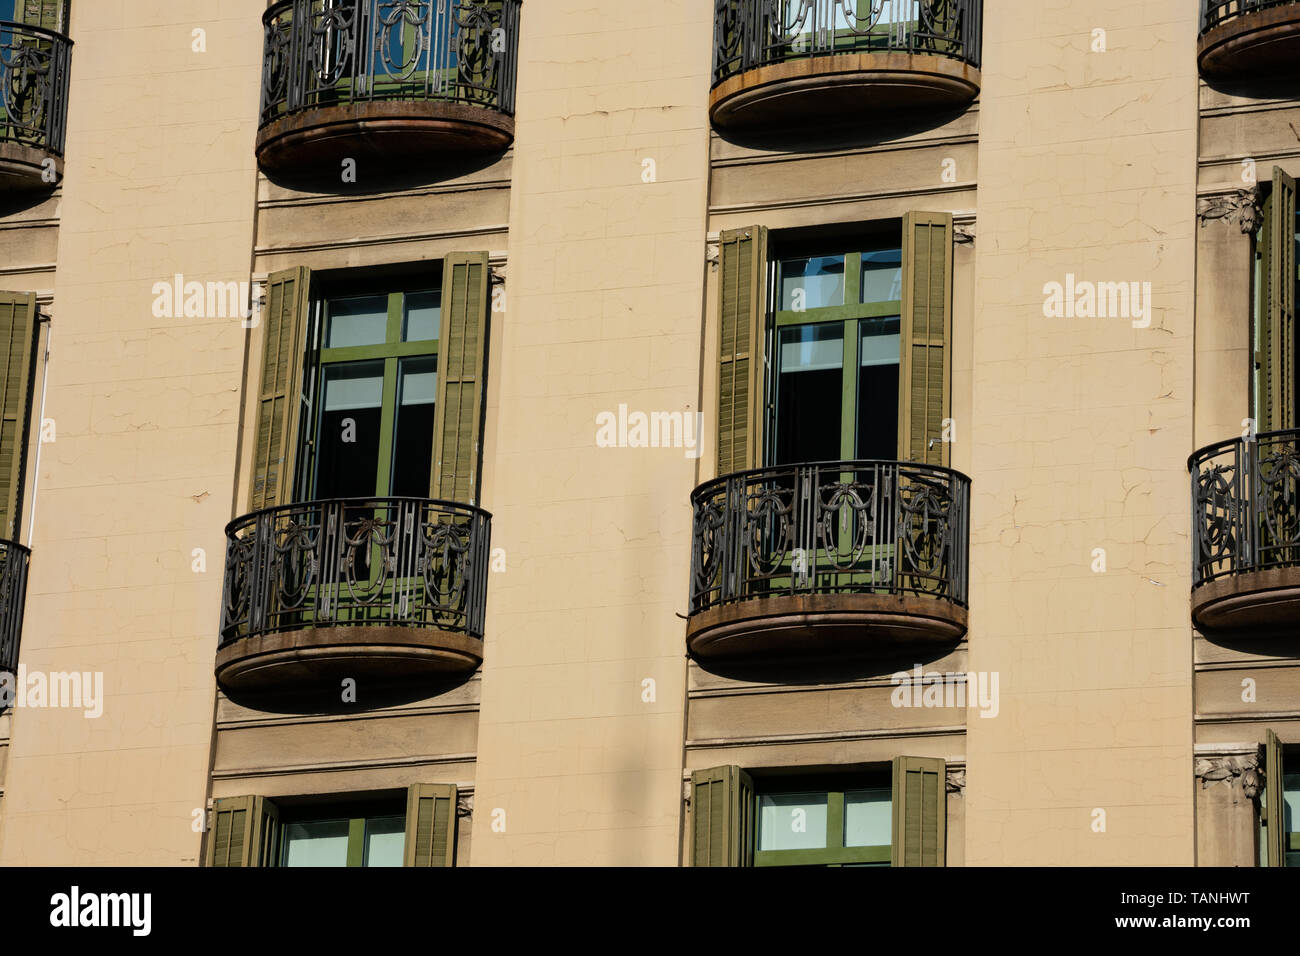 Barcelona, España. El 9 de febrero de 2019. Antiguo edificio de fachada y balcones. Avenida Diagonal Foto de stock